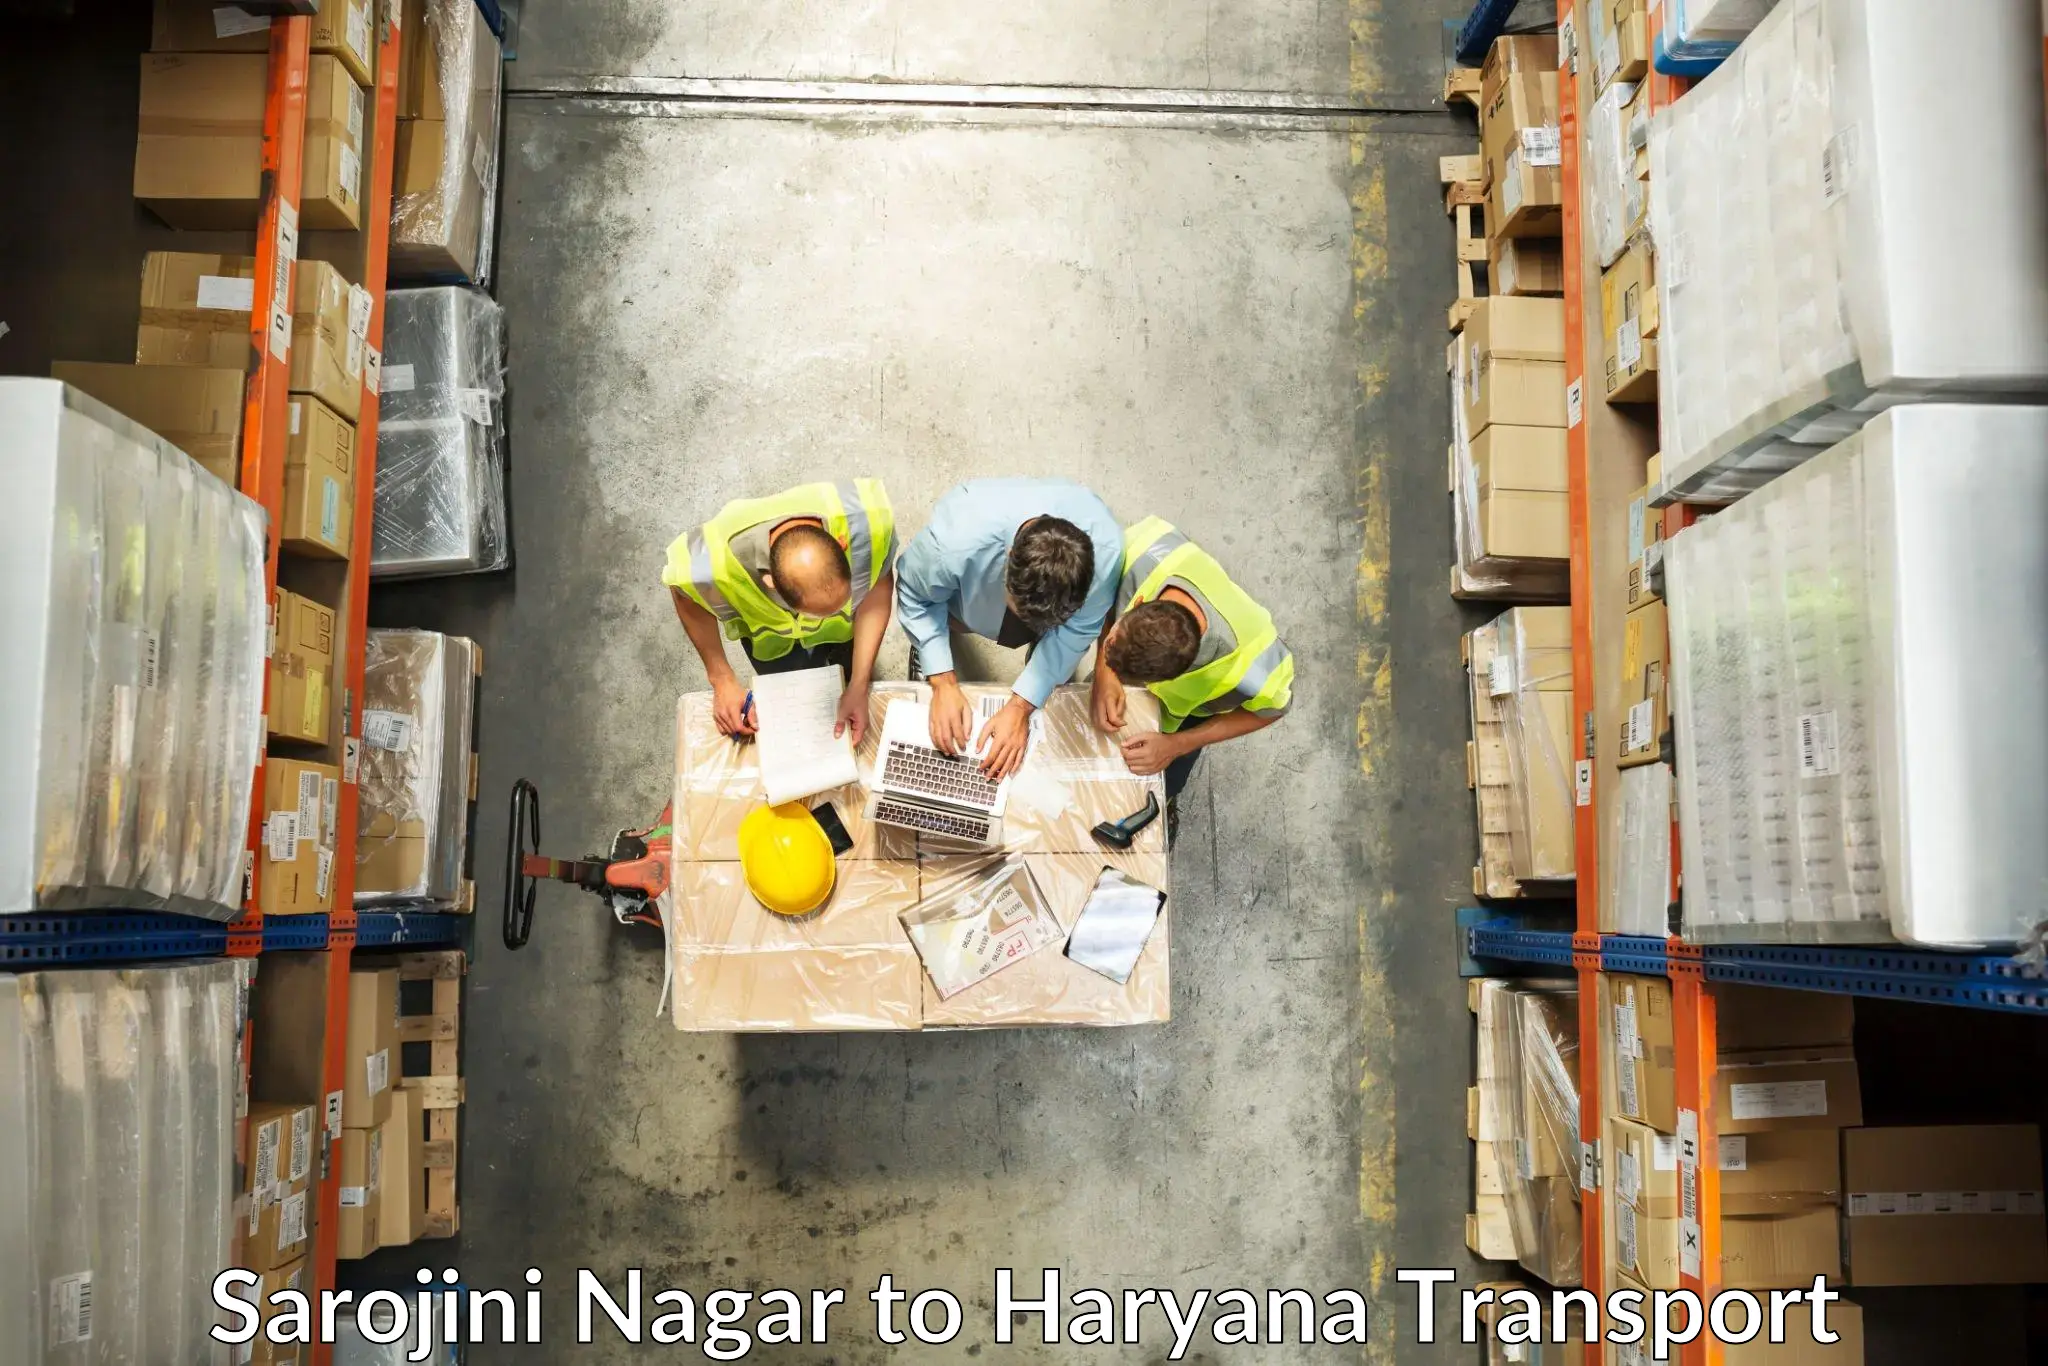 Container transport service Sarojini Nagar to Charkhi Dadri